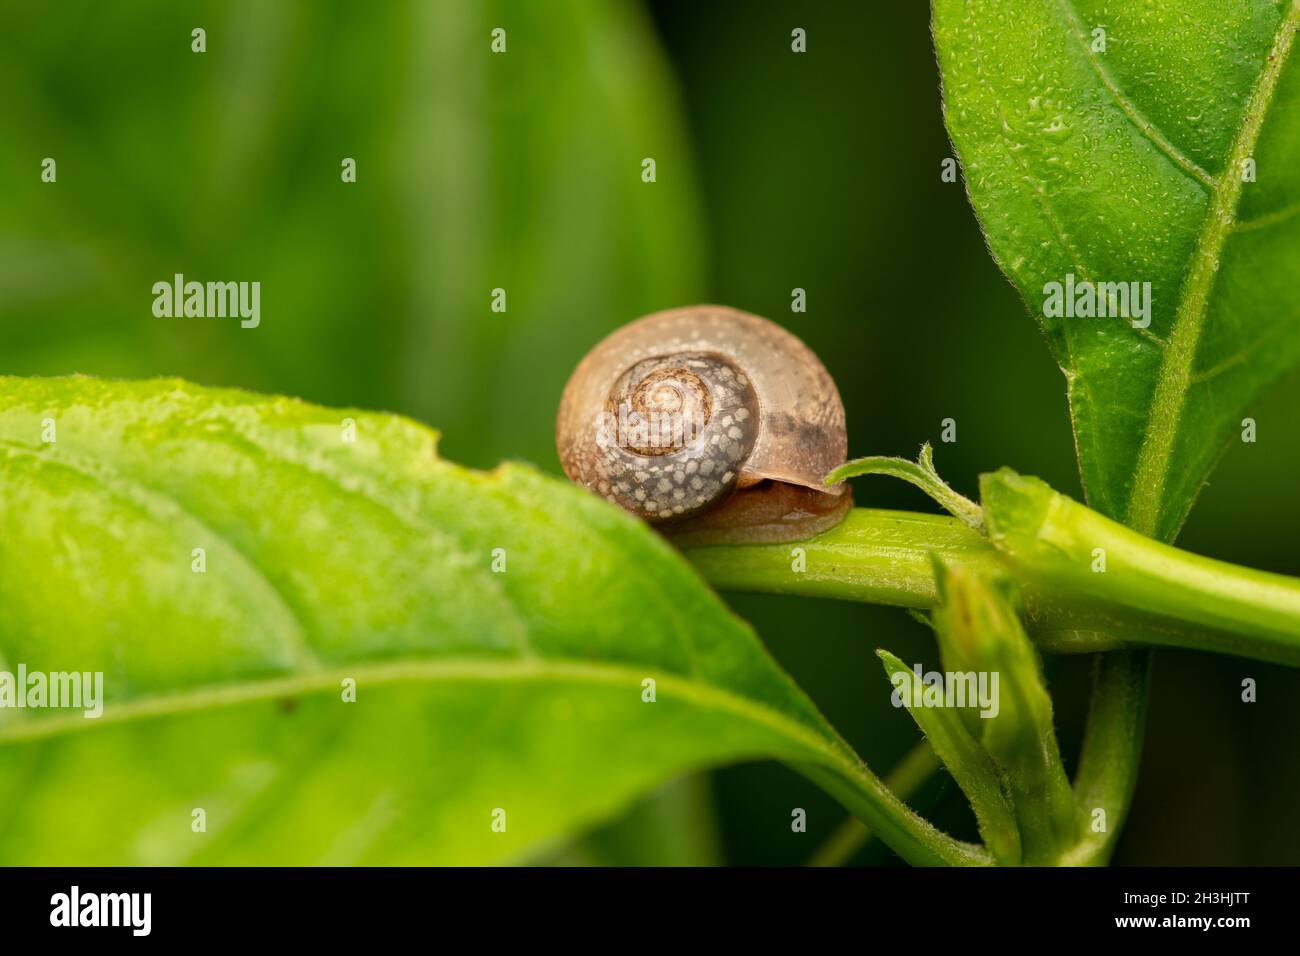 Pleurodonte guadeloupensis est une espèce d'escargot de terre tropical respirant l'air sur une plante verte Banque D'Images